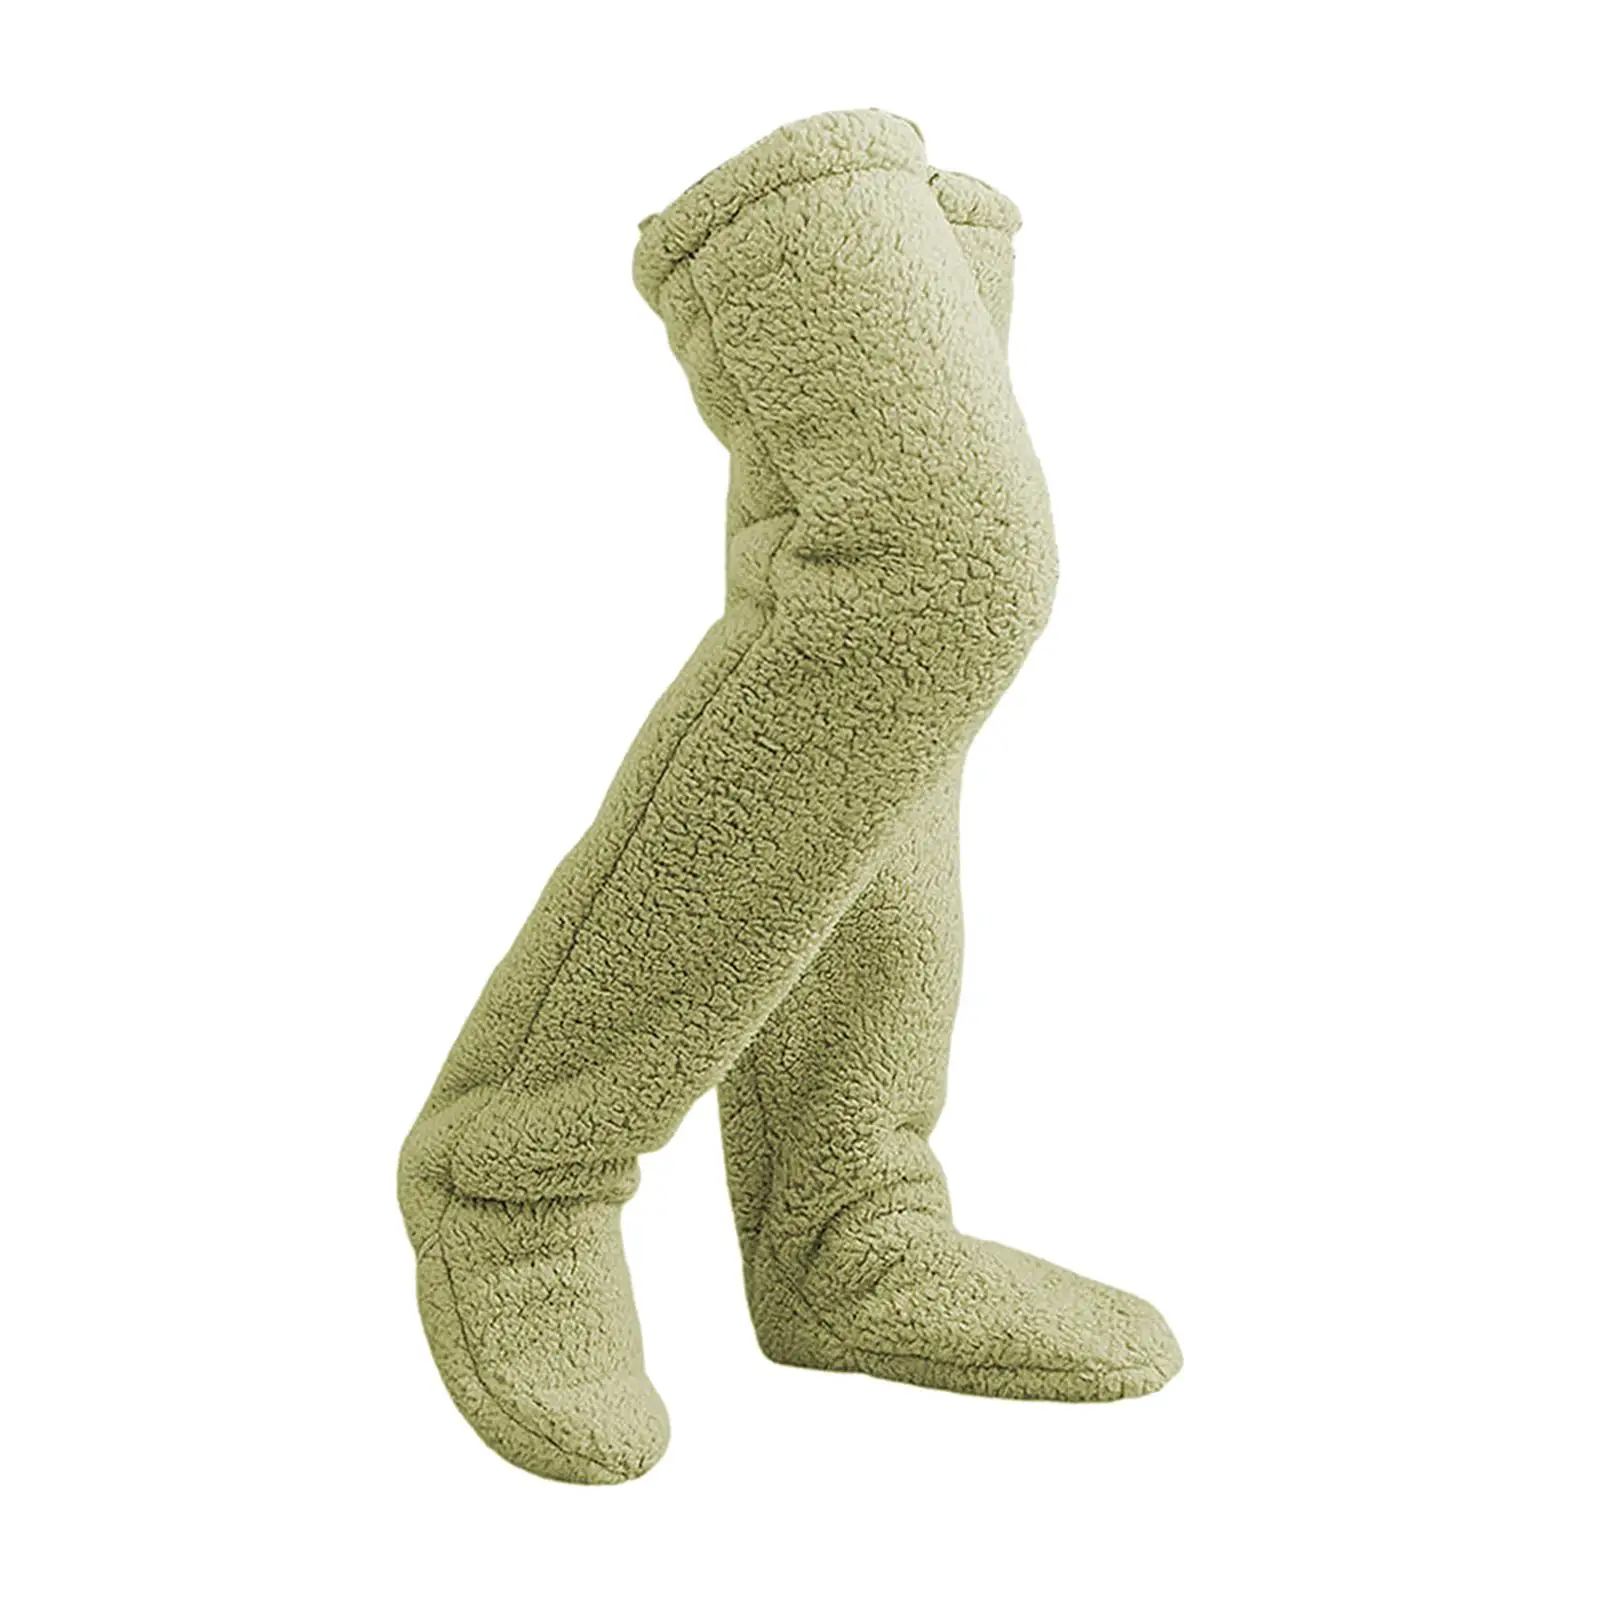 Thigh High Socks, Plush Leg Warmers, Slipper Stockings, Over Knee High Socks for Bedroom